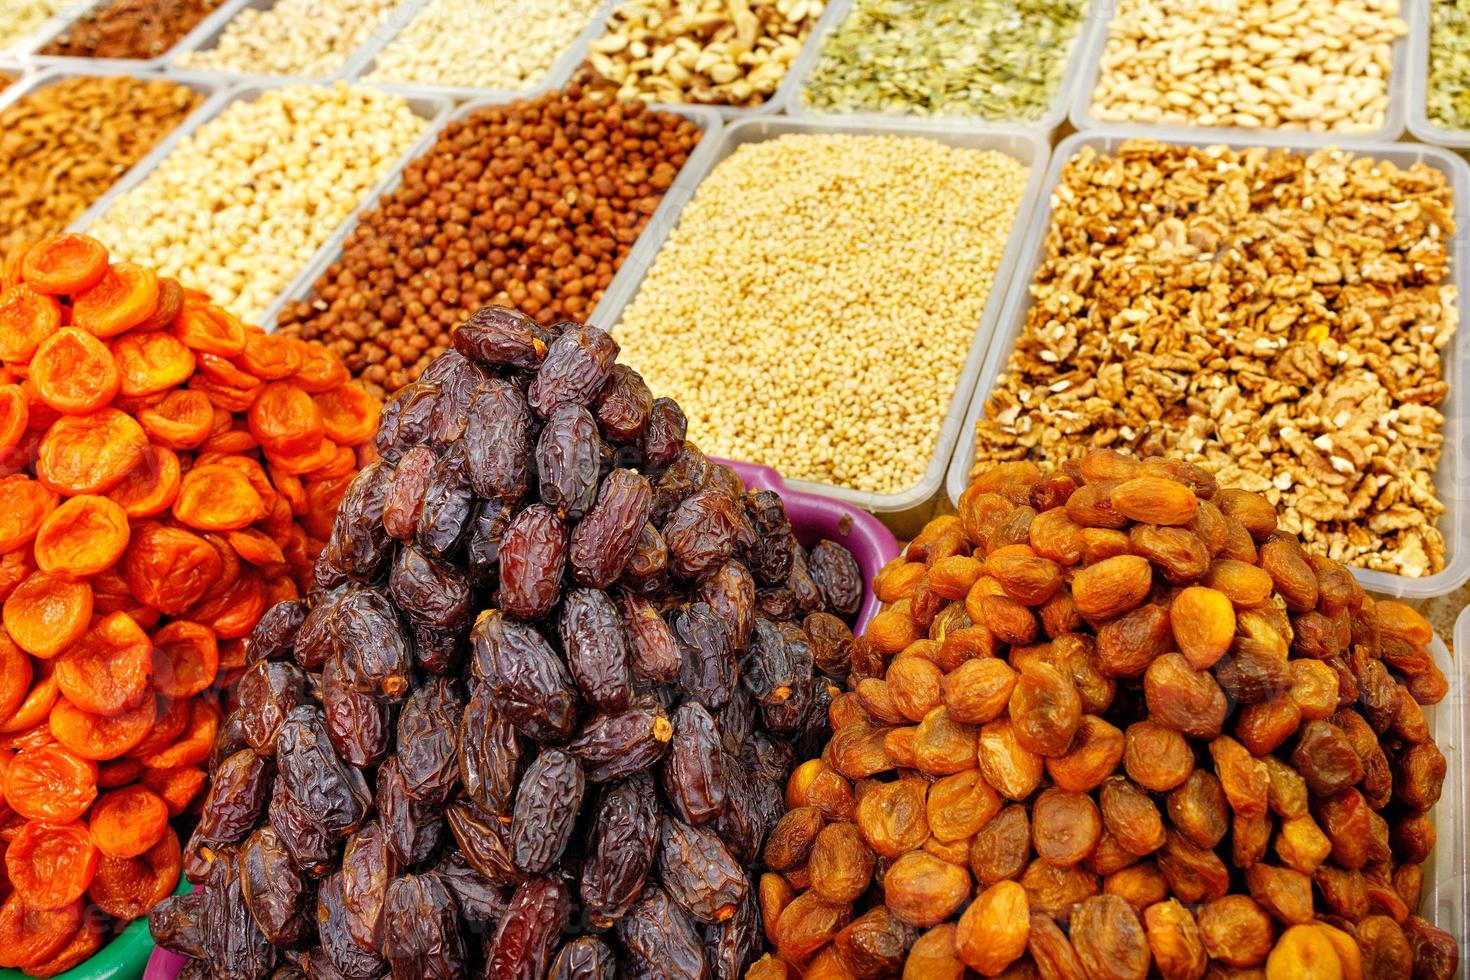 dadels, gedroogde abrikozen worden op de markt verkocht op de achtergrond van verschillende noten, amandelen, hazelnoten, walnoten, cashewnoten in bewegingsonscherpte. foto